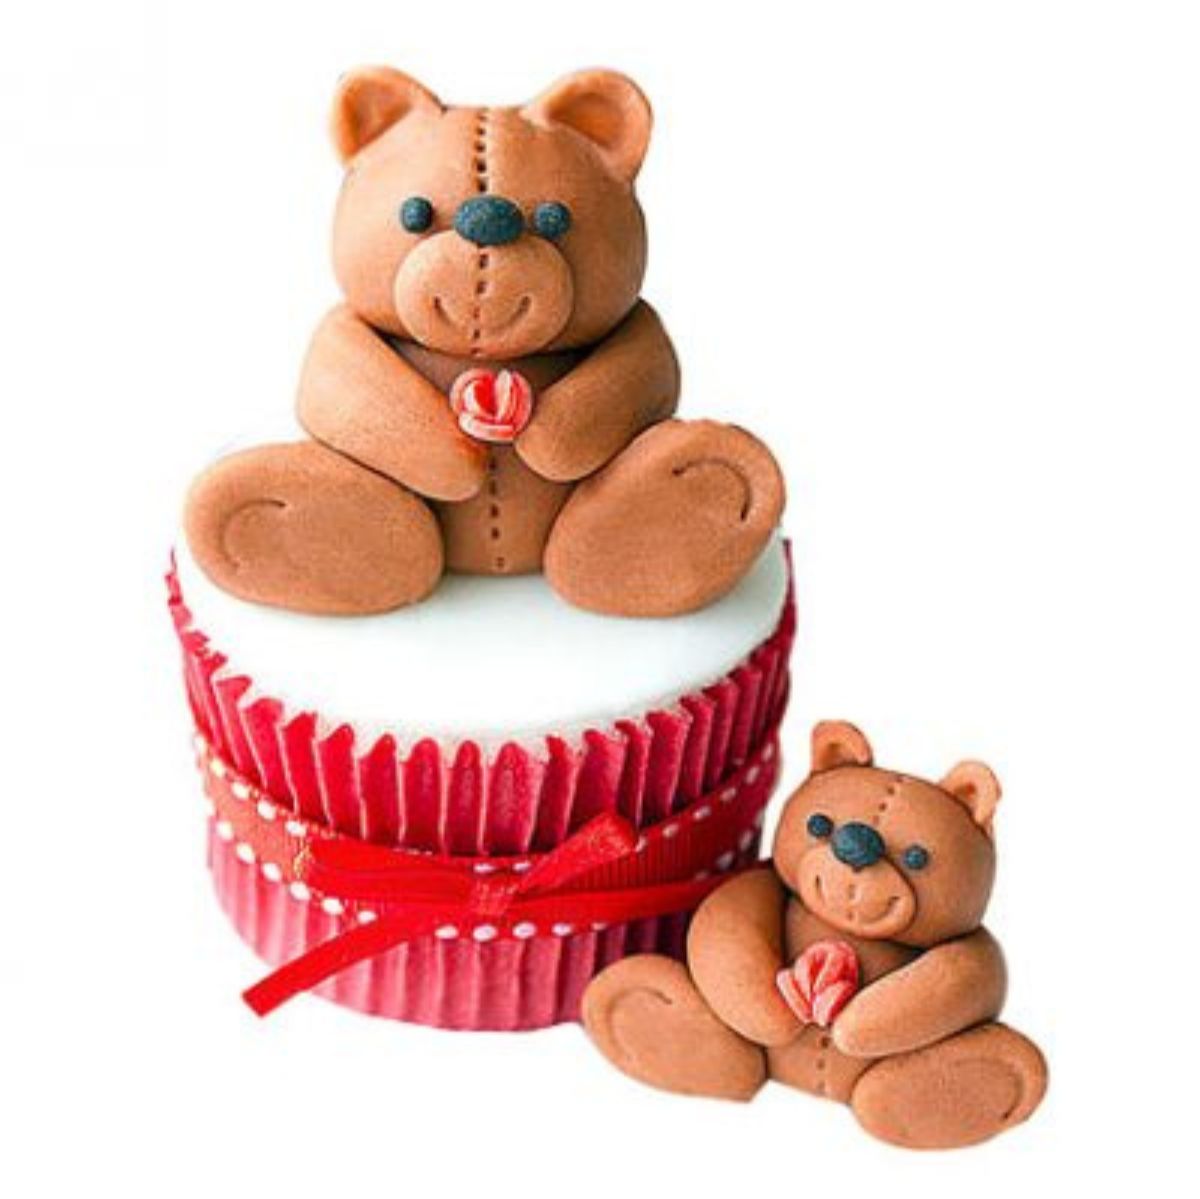 Teddy Love Cupcakes